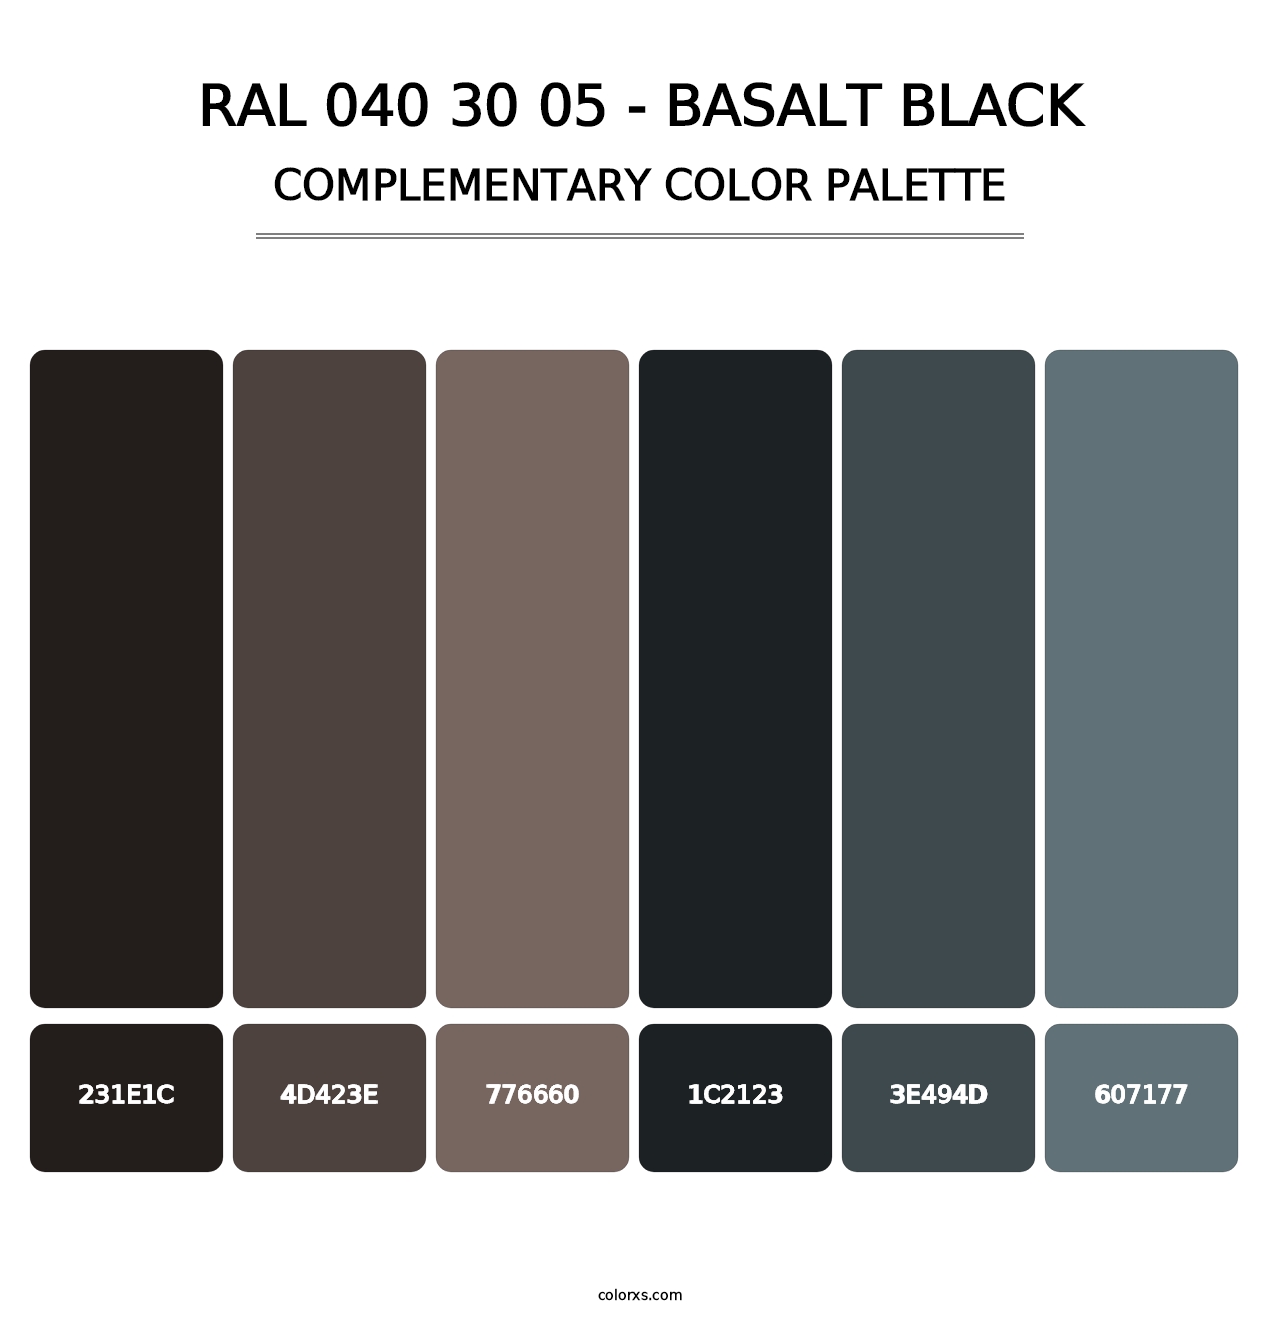 RAL 040 30 05 - Basalt Black - Complementary Color Palette